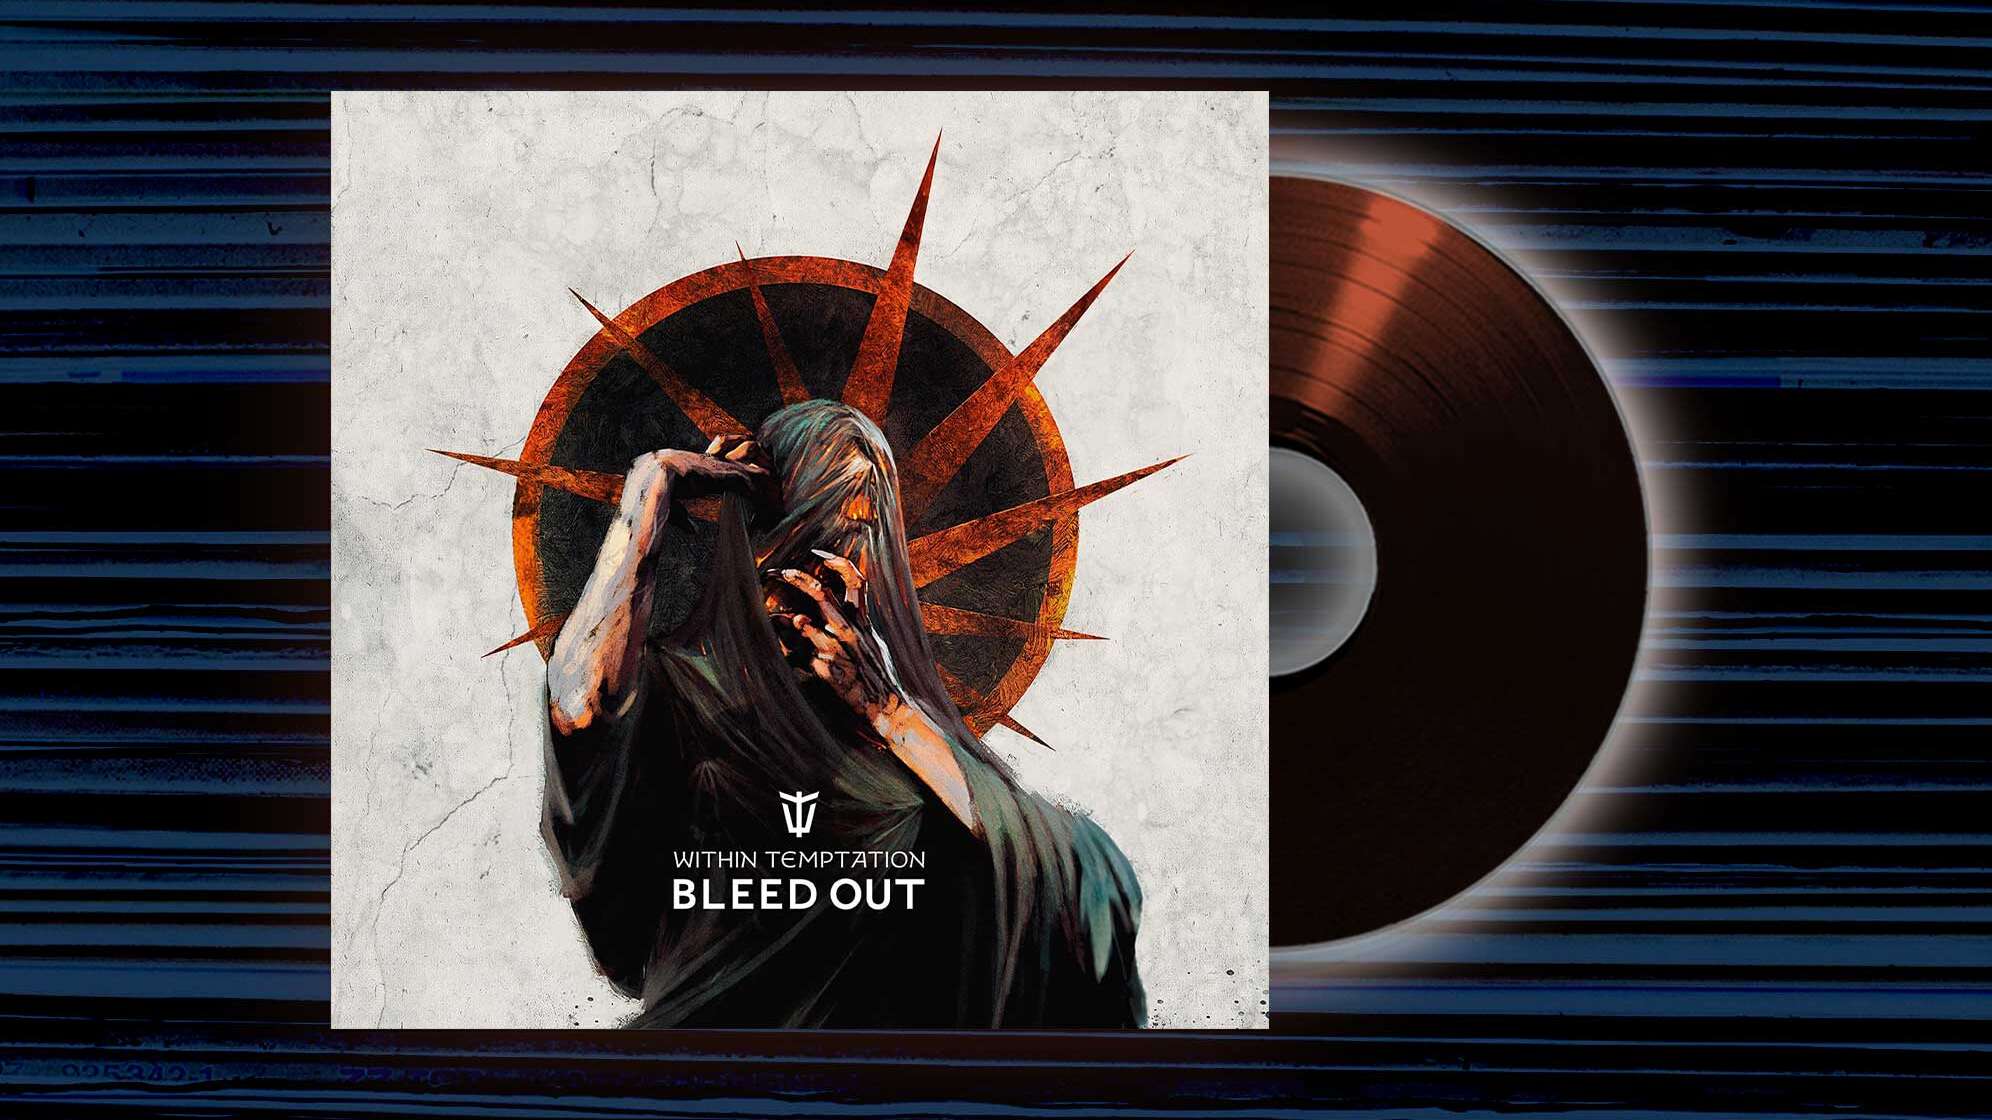 Das Albumcover von "Bleed Out" von Within Temptation